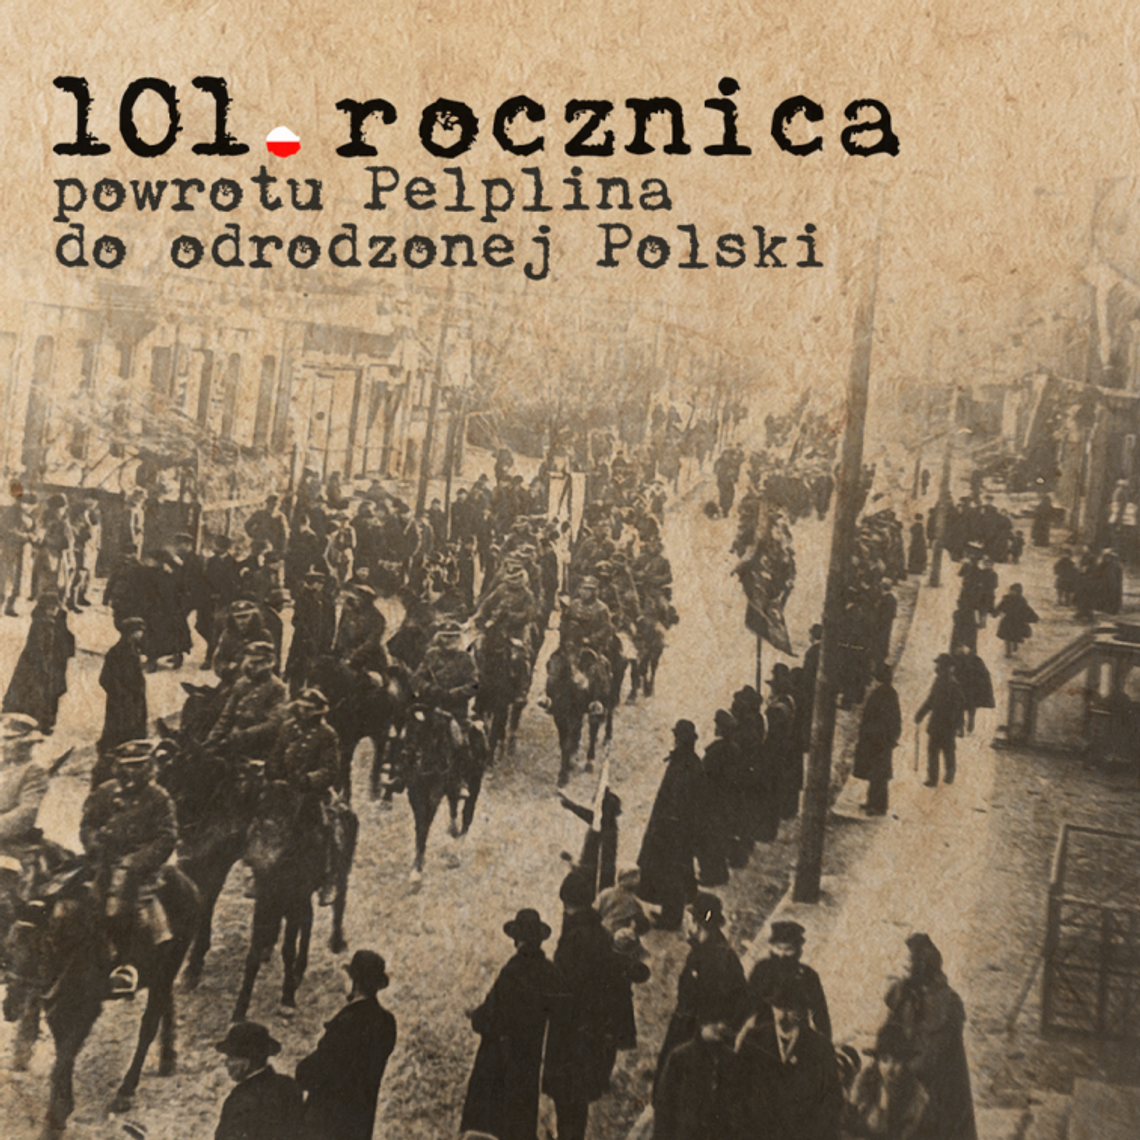 101. rocznica powrotu Pelplina do odrodzonej Polski